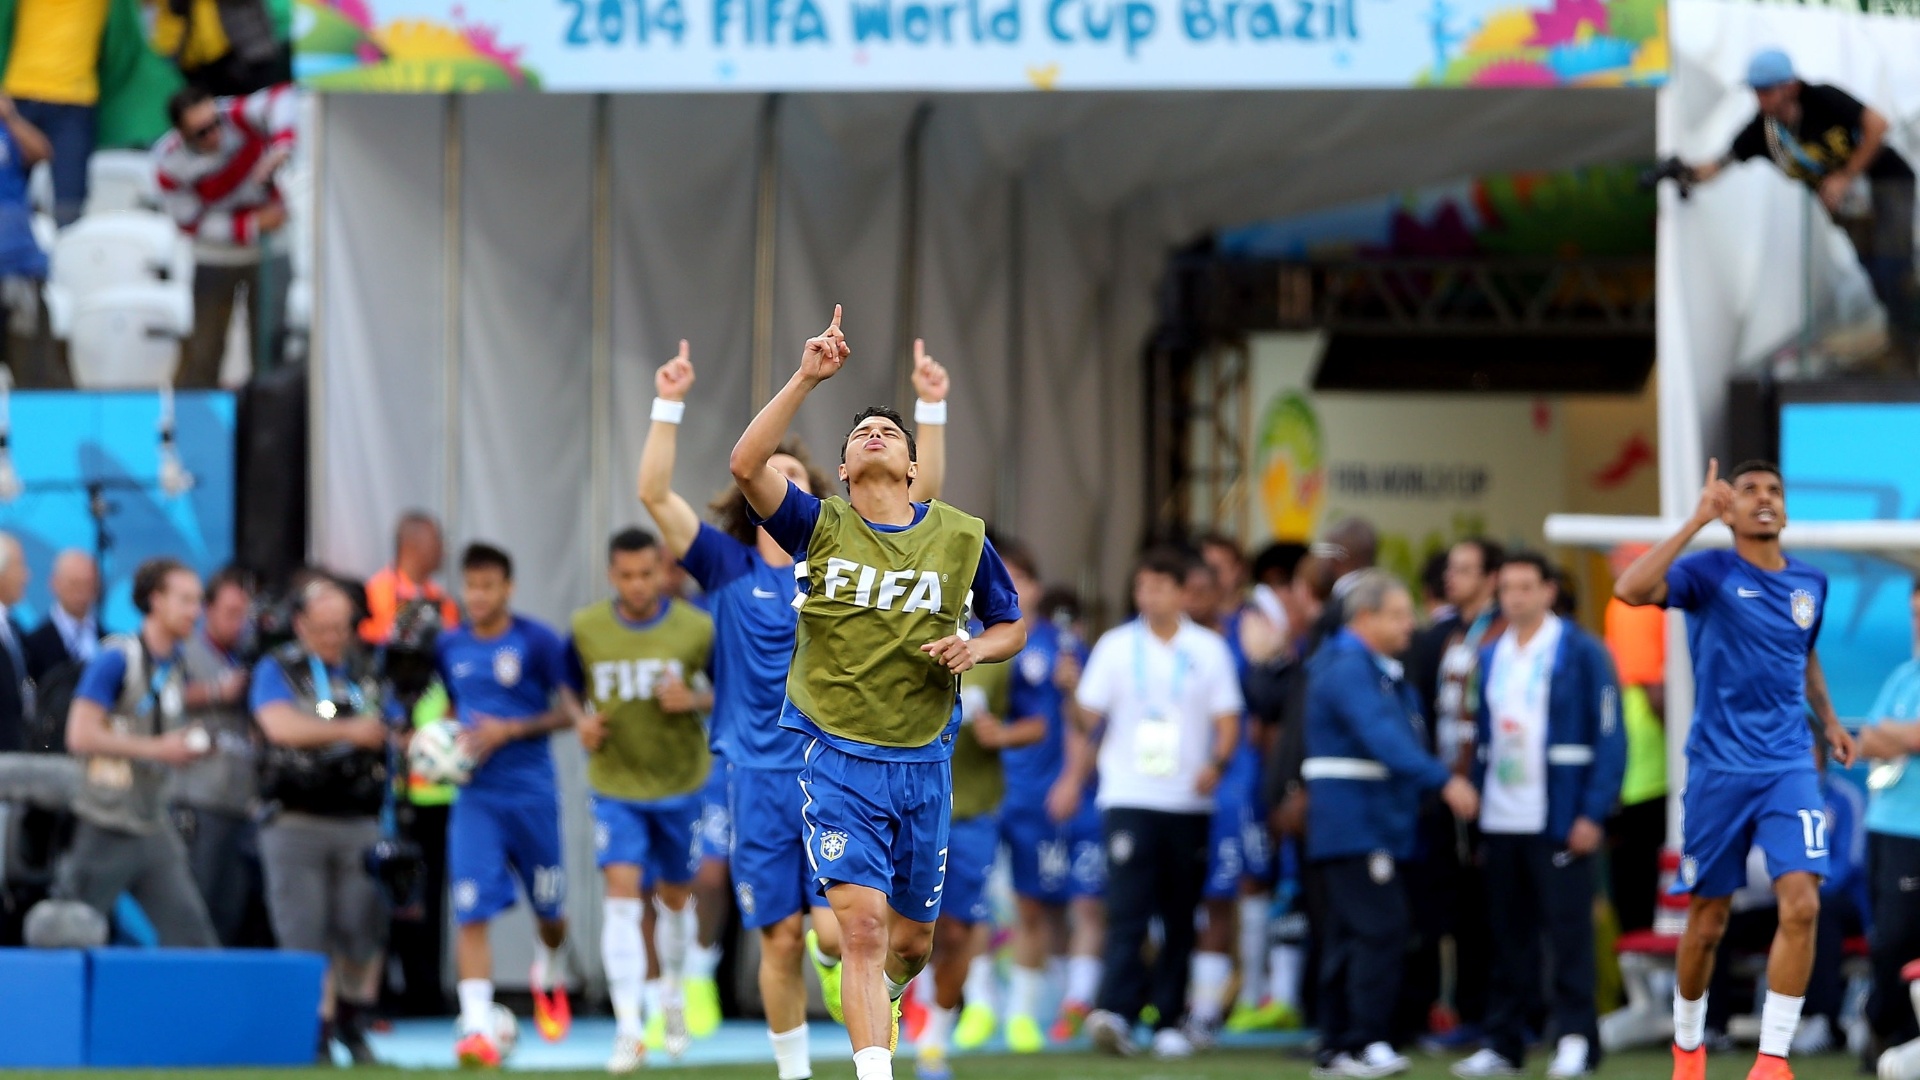 12.jun.2014 - Thiago Silva e David Luiz entram no gramado do Itaquerão para aquecimento antes do jogo contra a Croácia